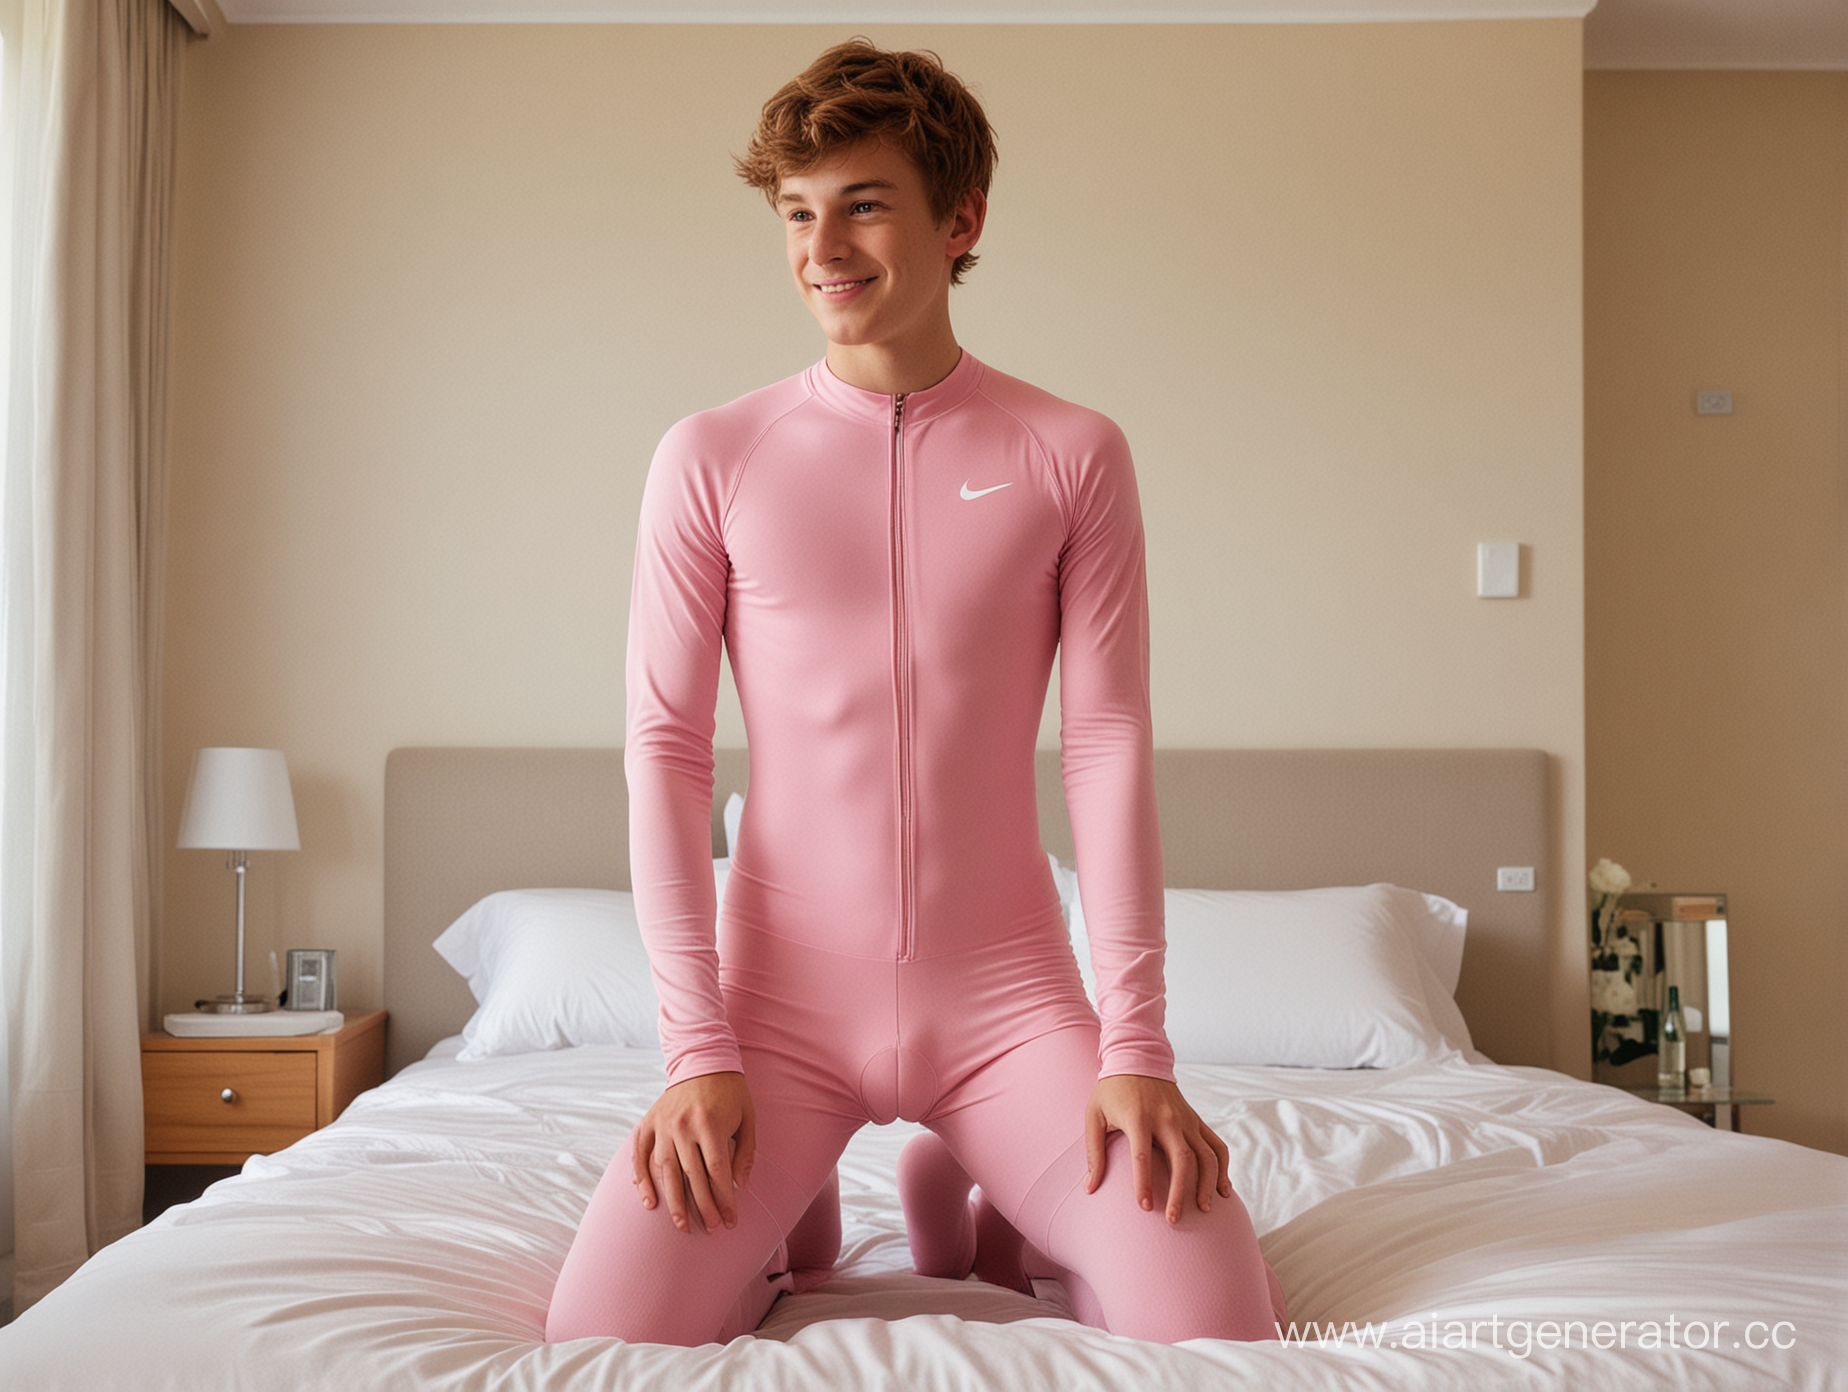  un garçon anglais de 19 ans nu,  aux cheveux chatains,  souriant, portant un unitard de cyclisme rose et des longues chaussettes nike blanches , a genoux sur un lit  dans une chambre d'hotel, vue de coté